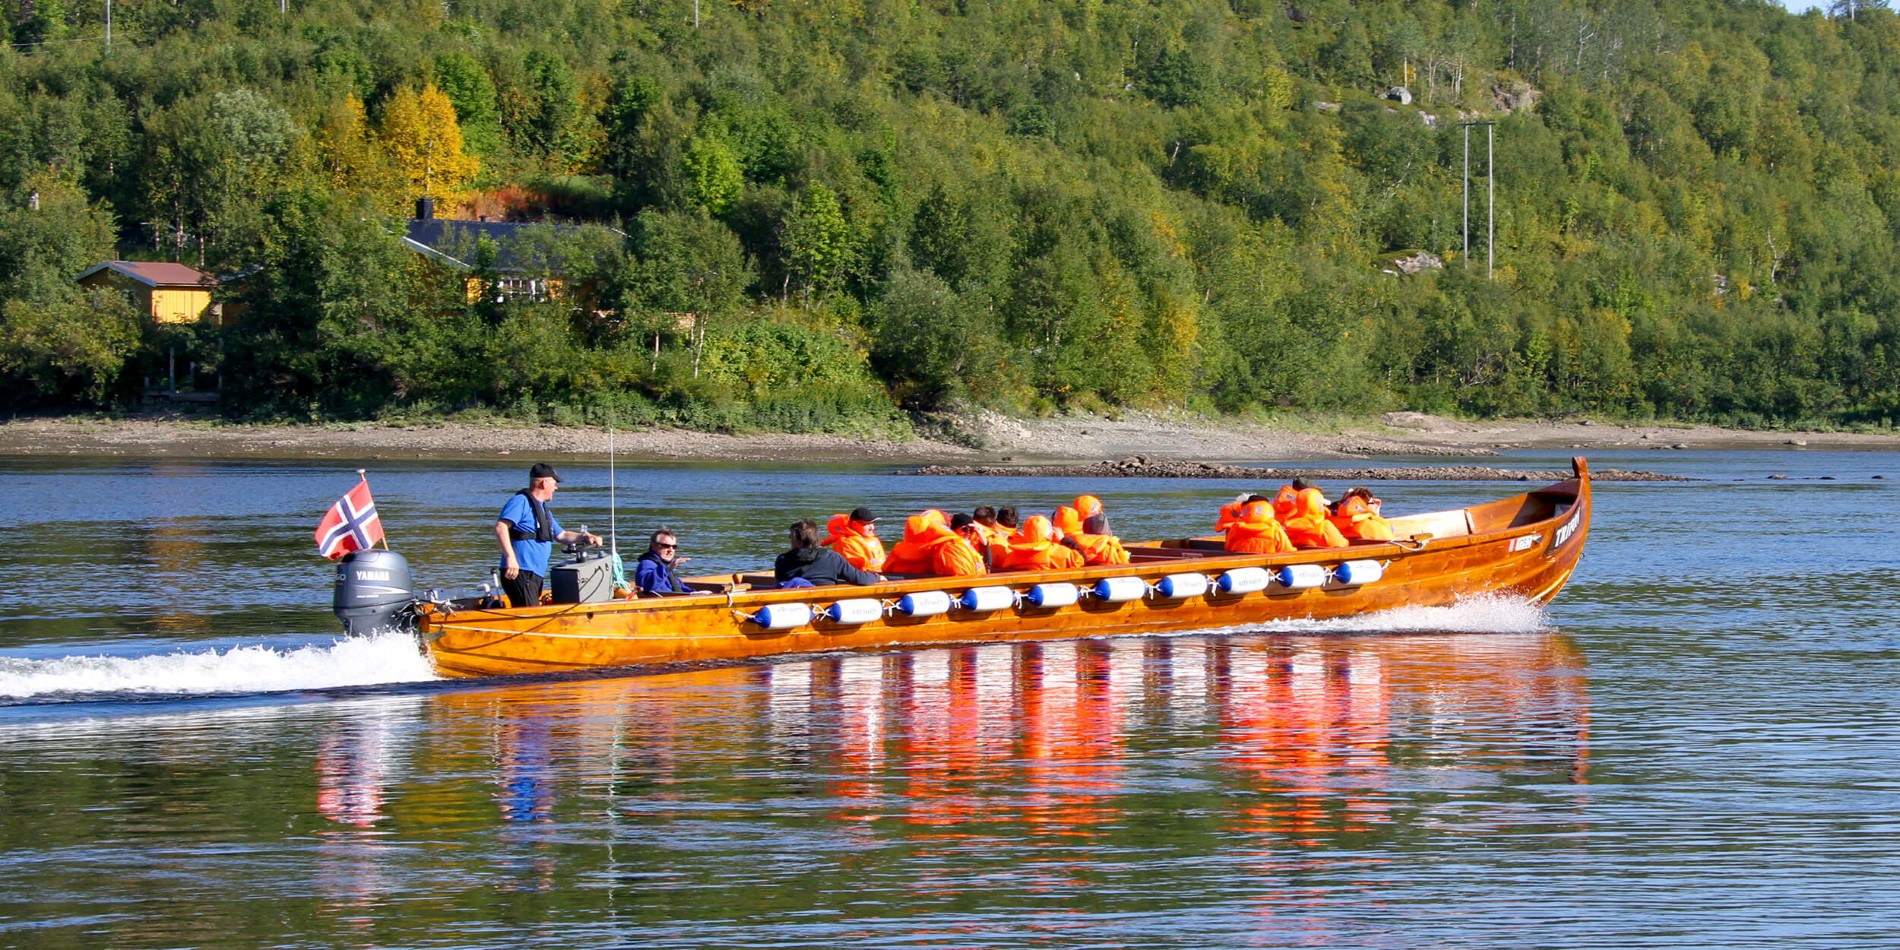 En grupp människor som rider på ryggen av en båt i vattnet